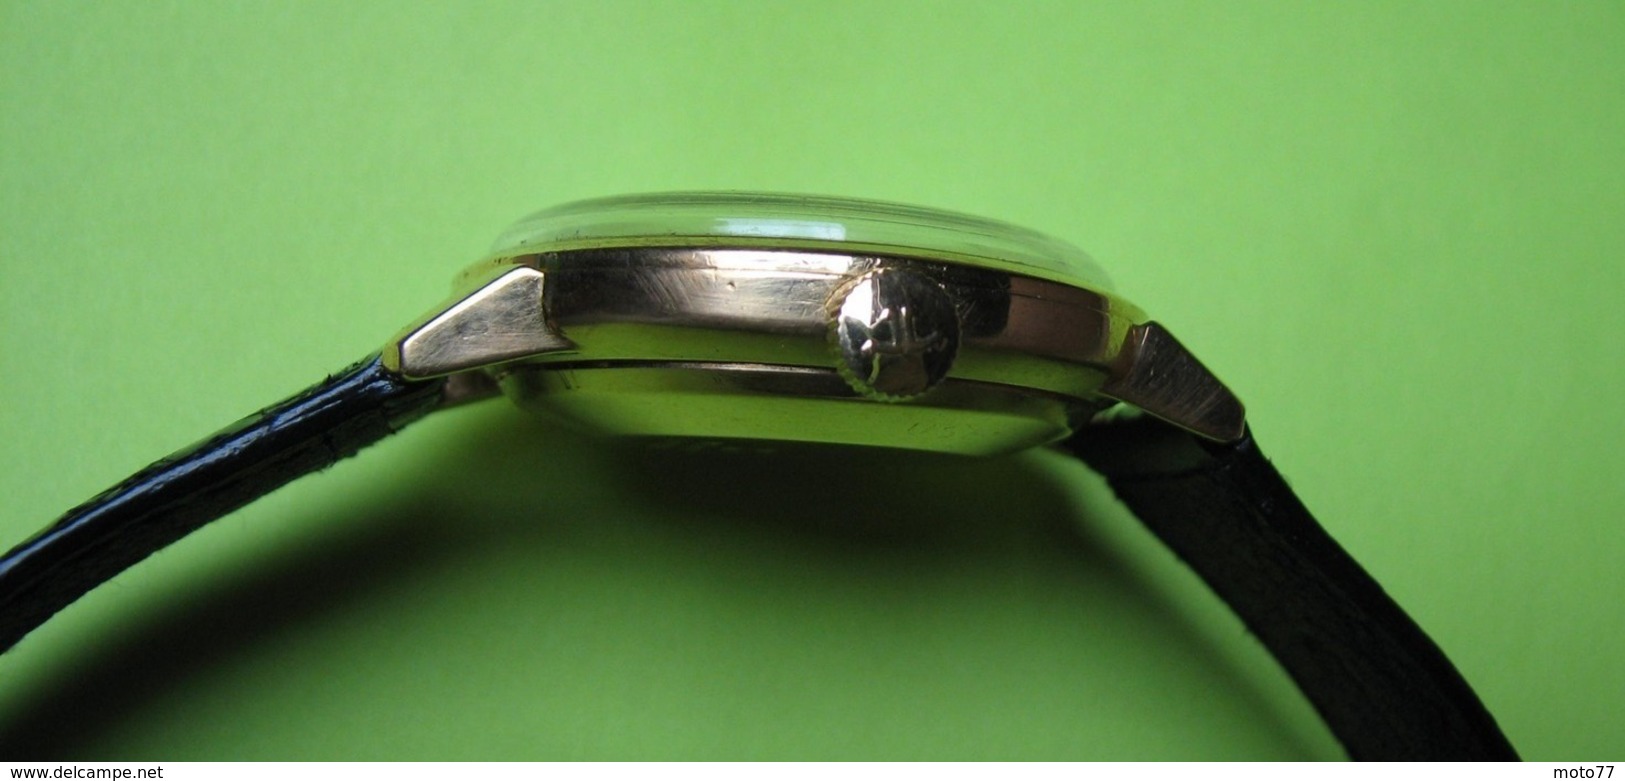 Montre homme - 1960 - JAEGER LECOULTRE Jour et Date Automatique OR 18K - bracelet JL - Boite JL